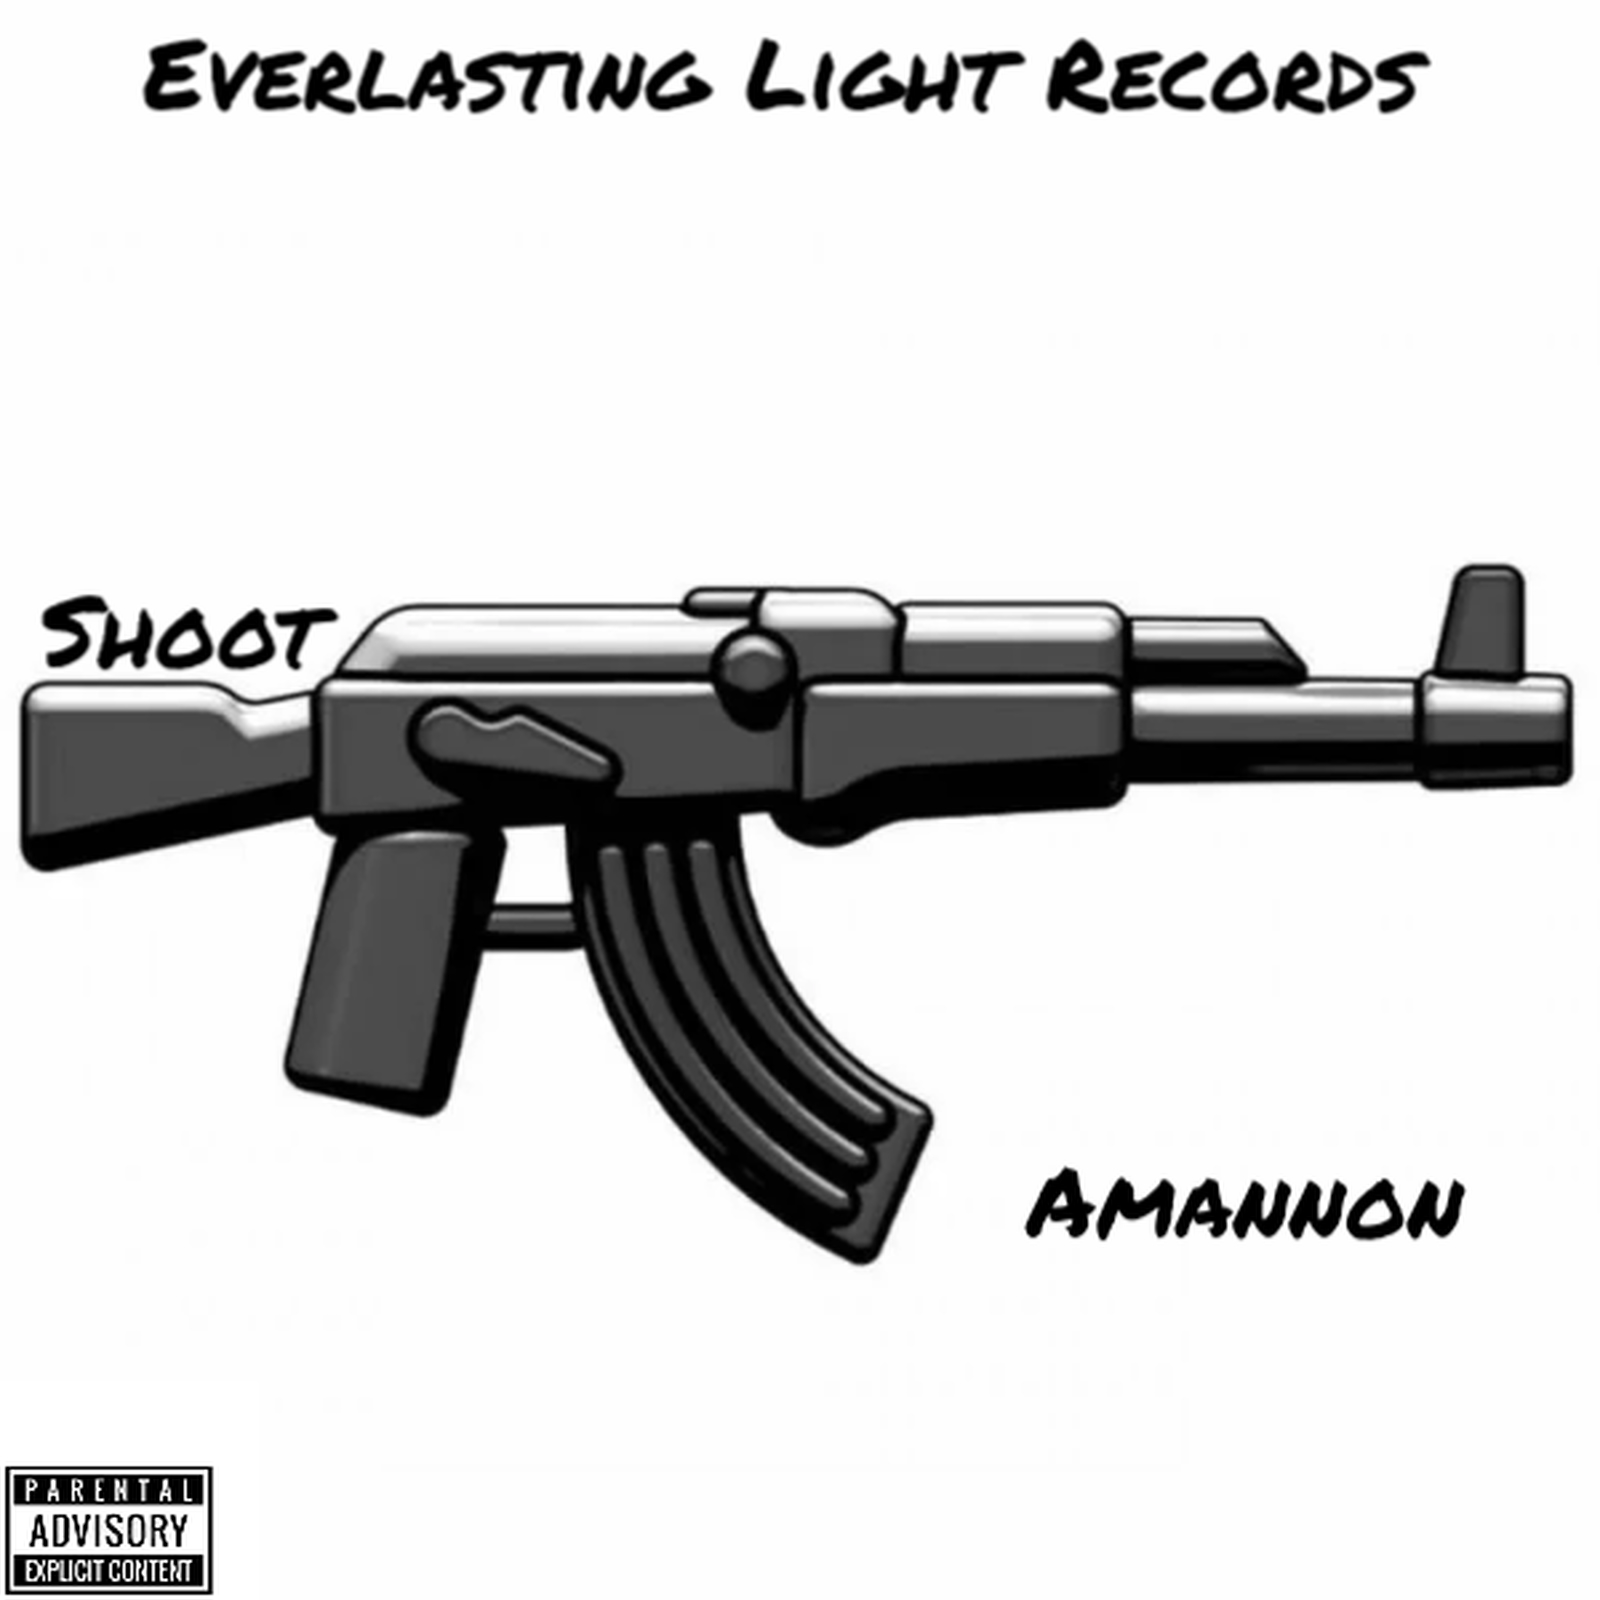 Amannon-shoot